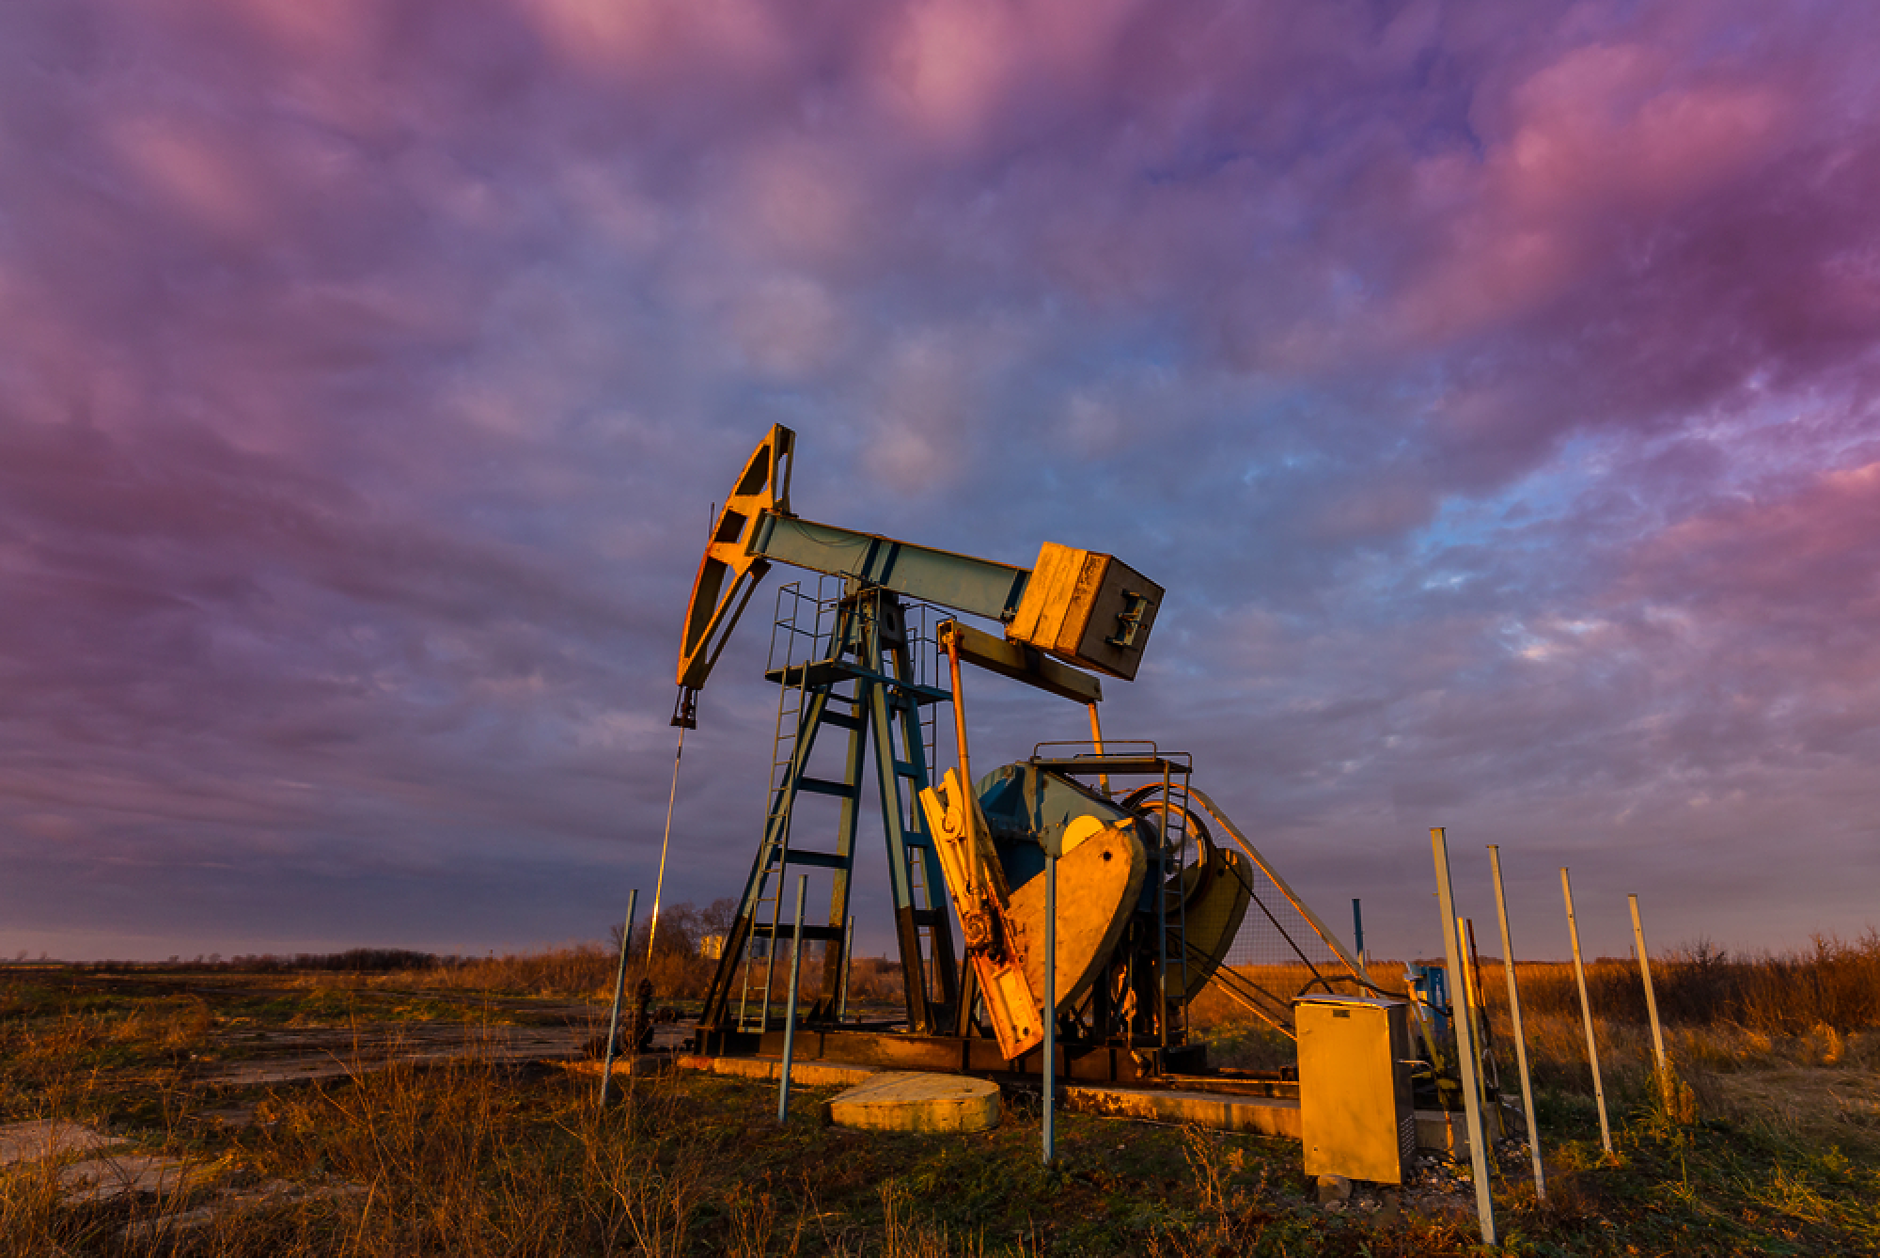 МАЕ повиши прогнозата си за растеж в световното търсене на петрол